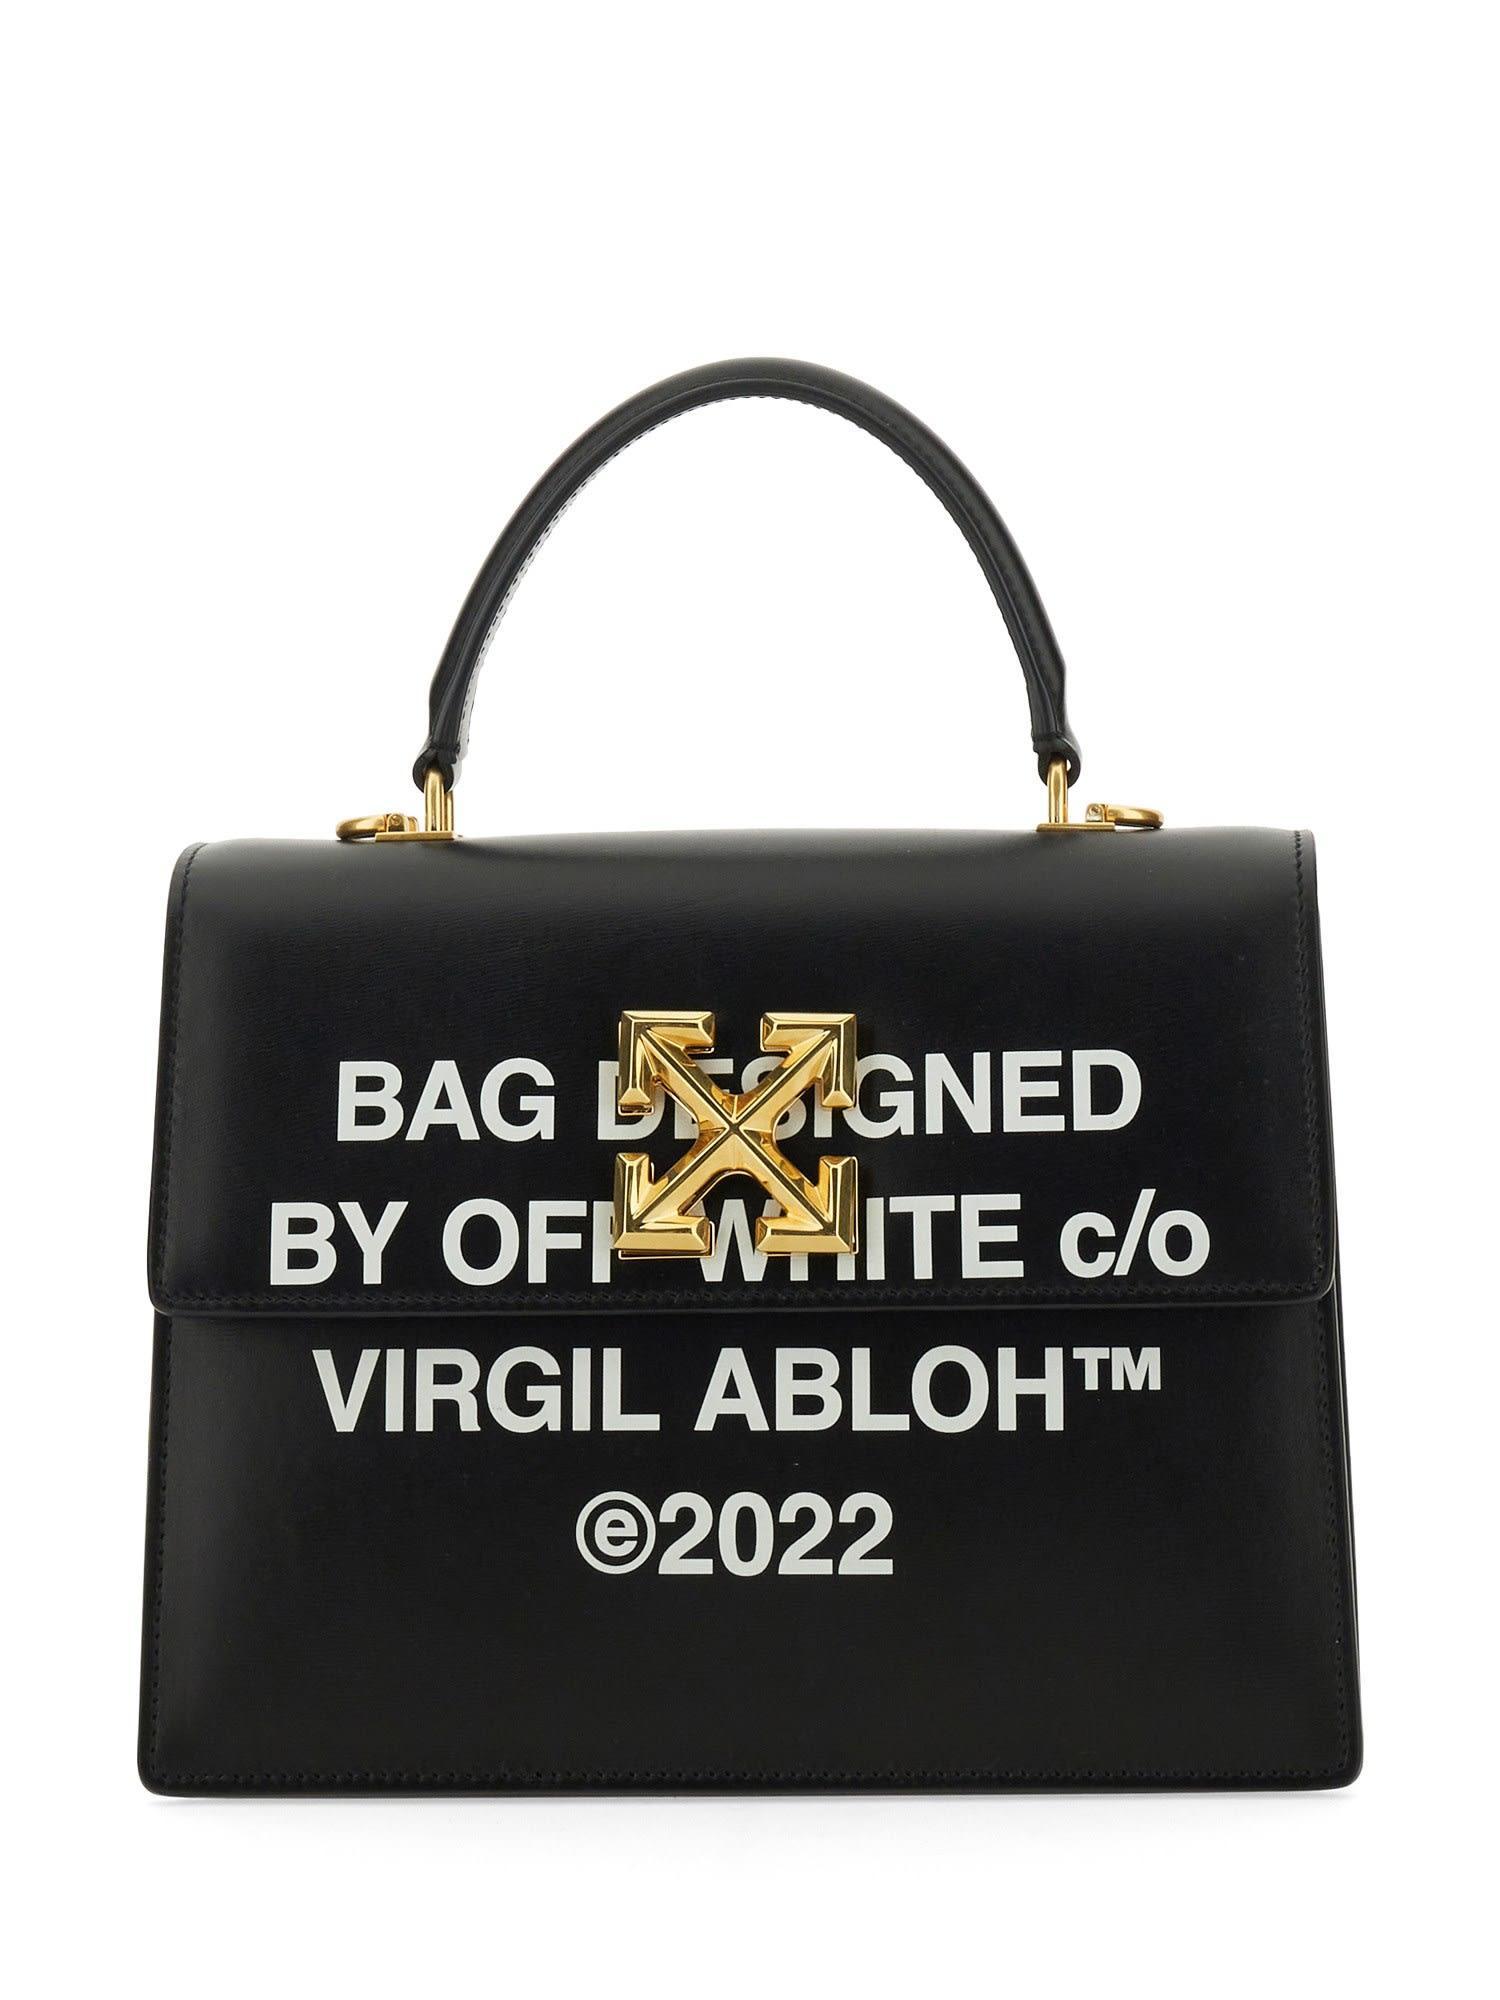 Off-White c/o Virgil Abloh Bags for Women